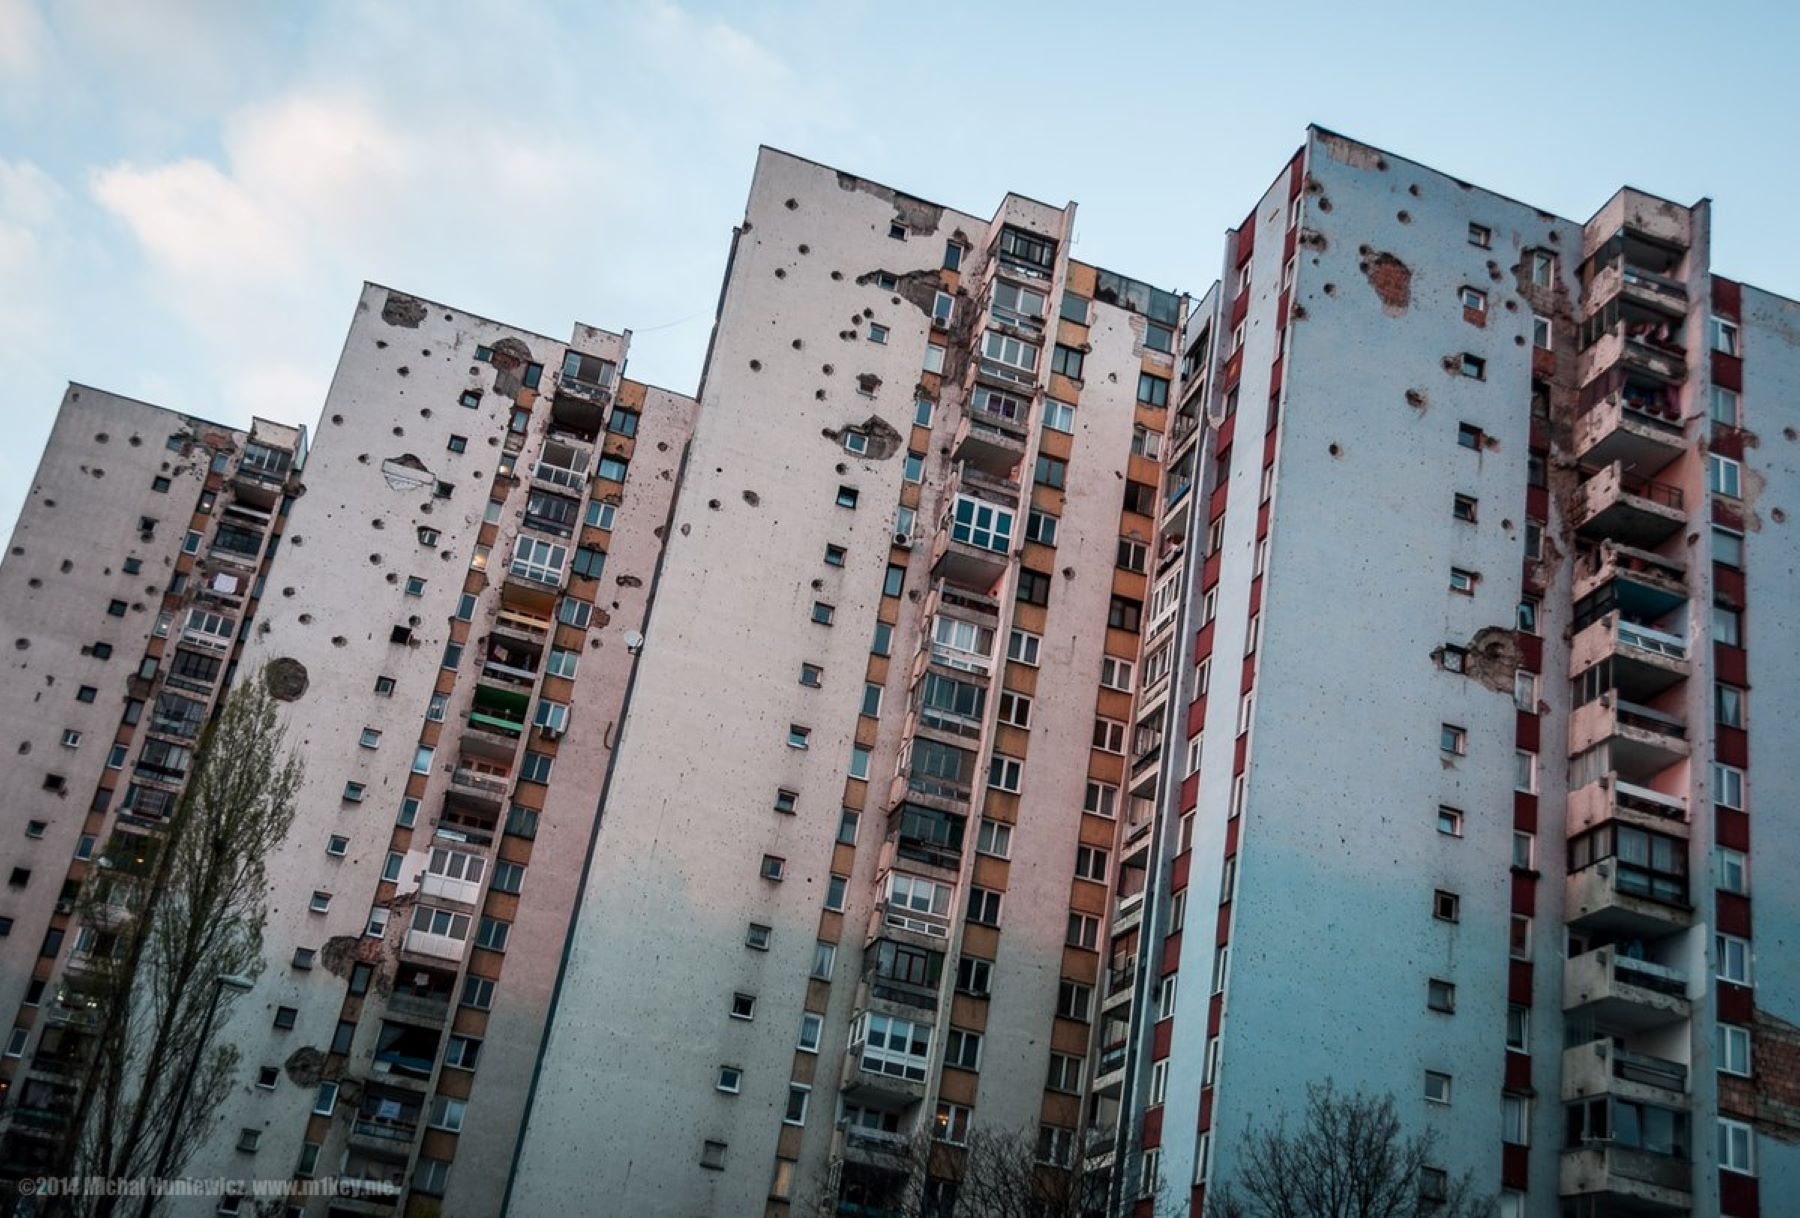 Háborús károk a szarajevói épületeken